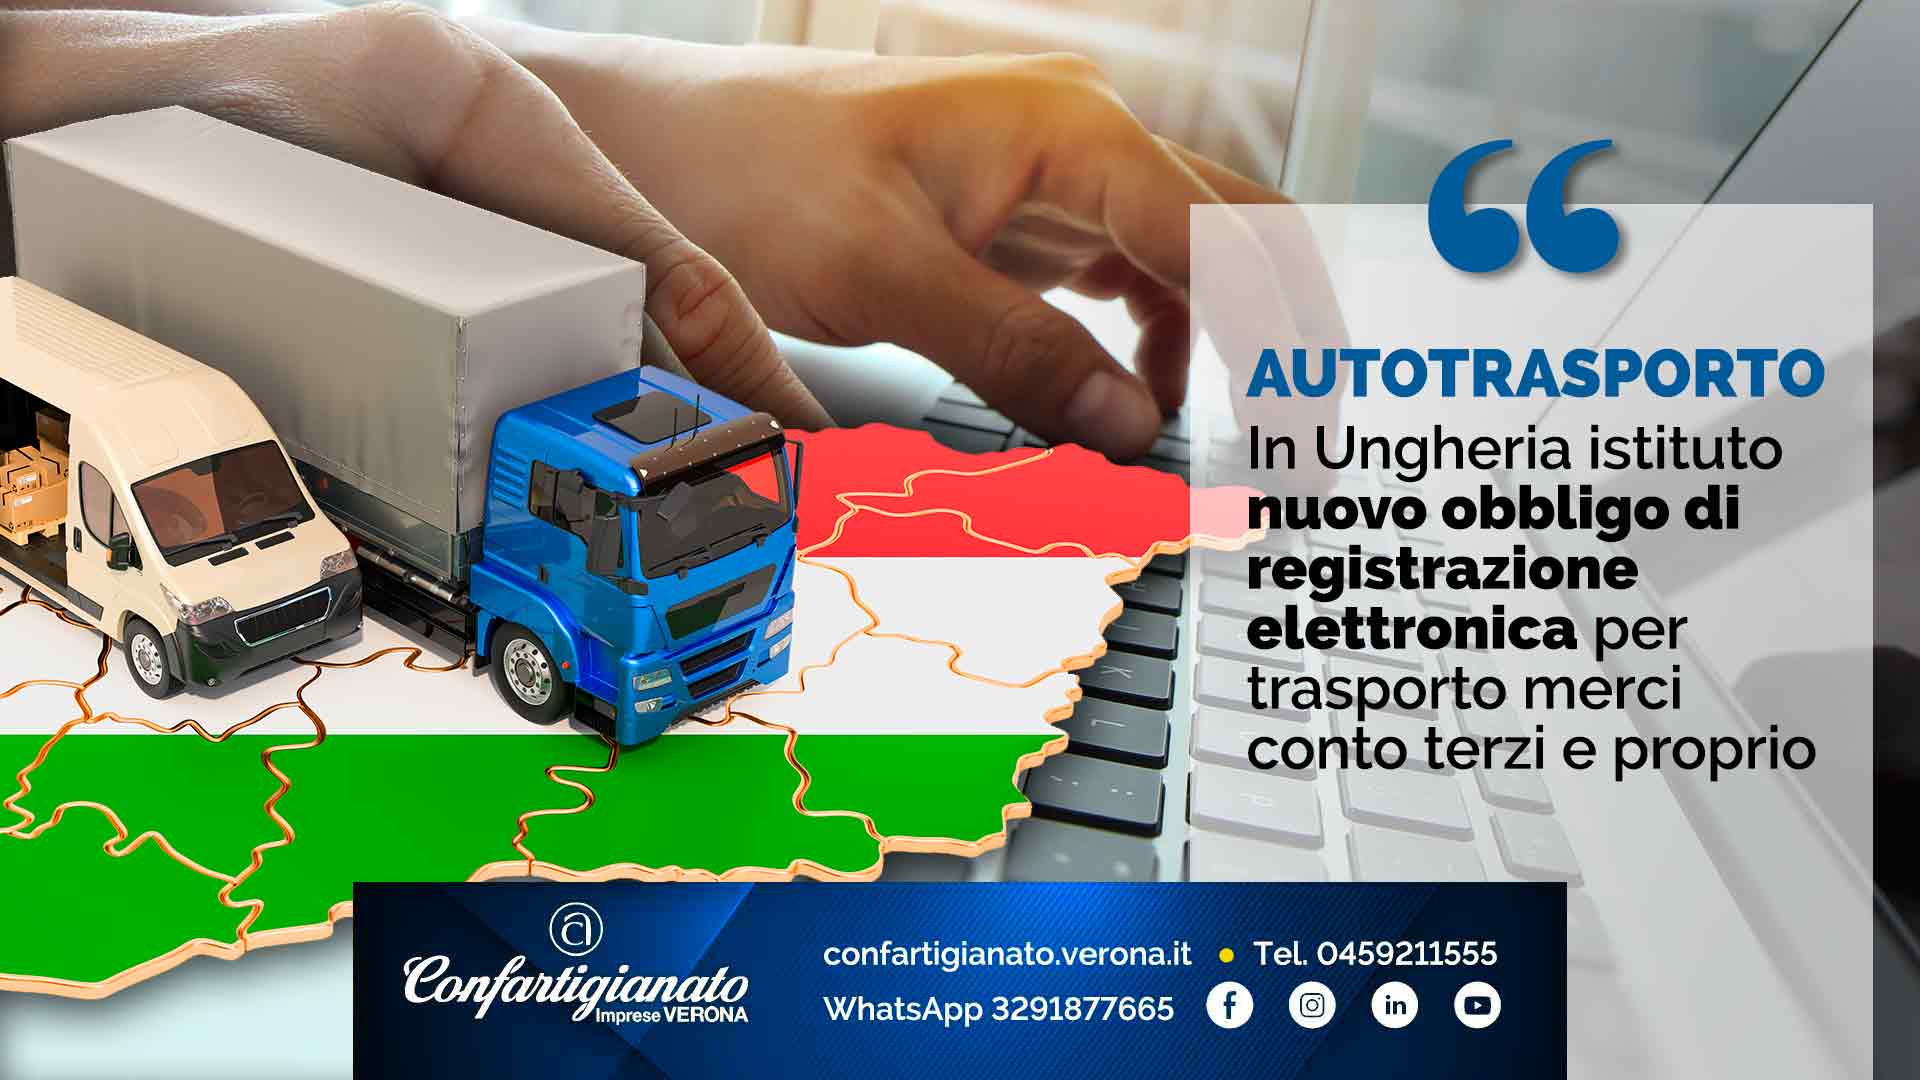 AUTOTRASPORTO – In Ungheria istituto nuovo obbligo di registrazione elettronica per trasporto merci conto terzi e proprio